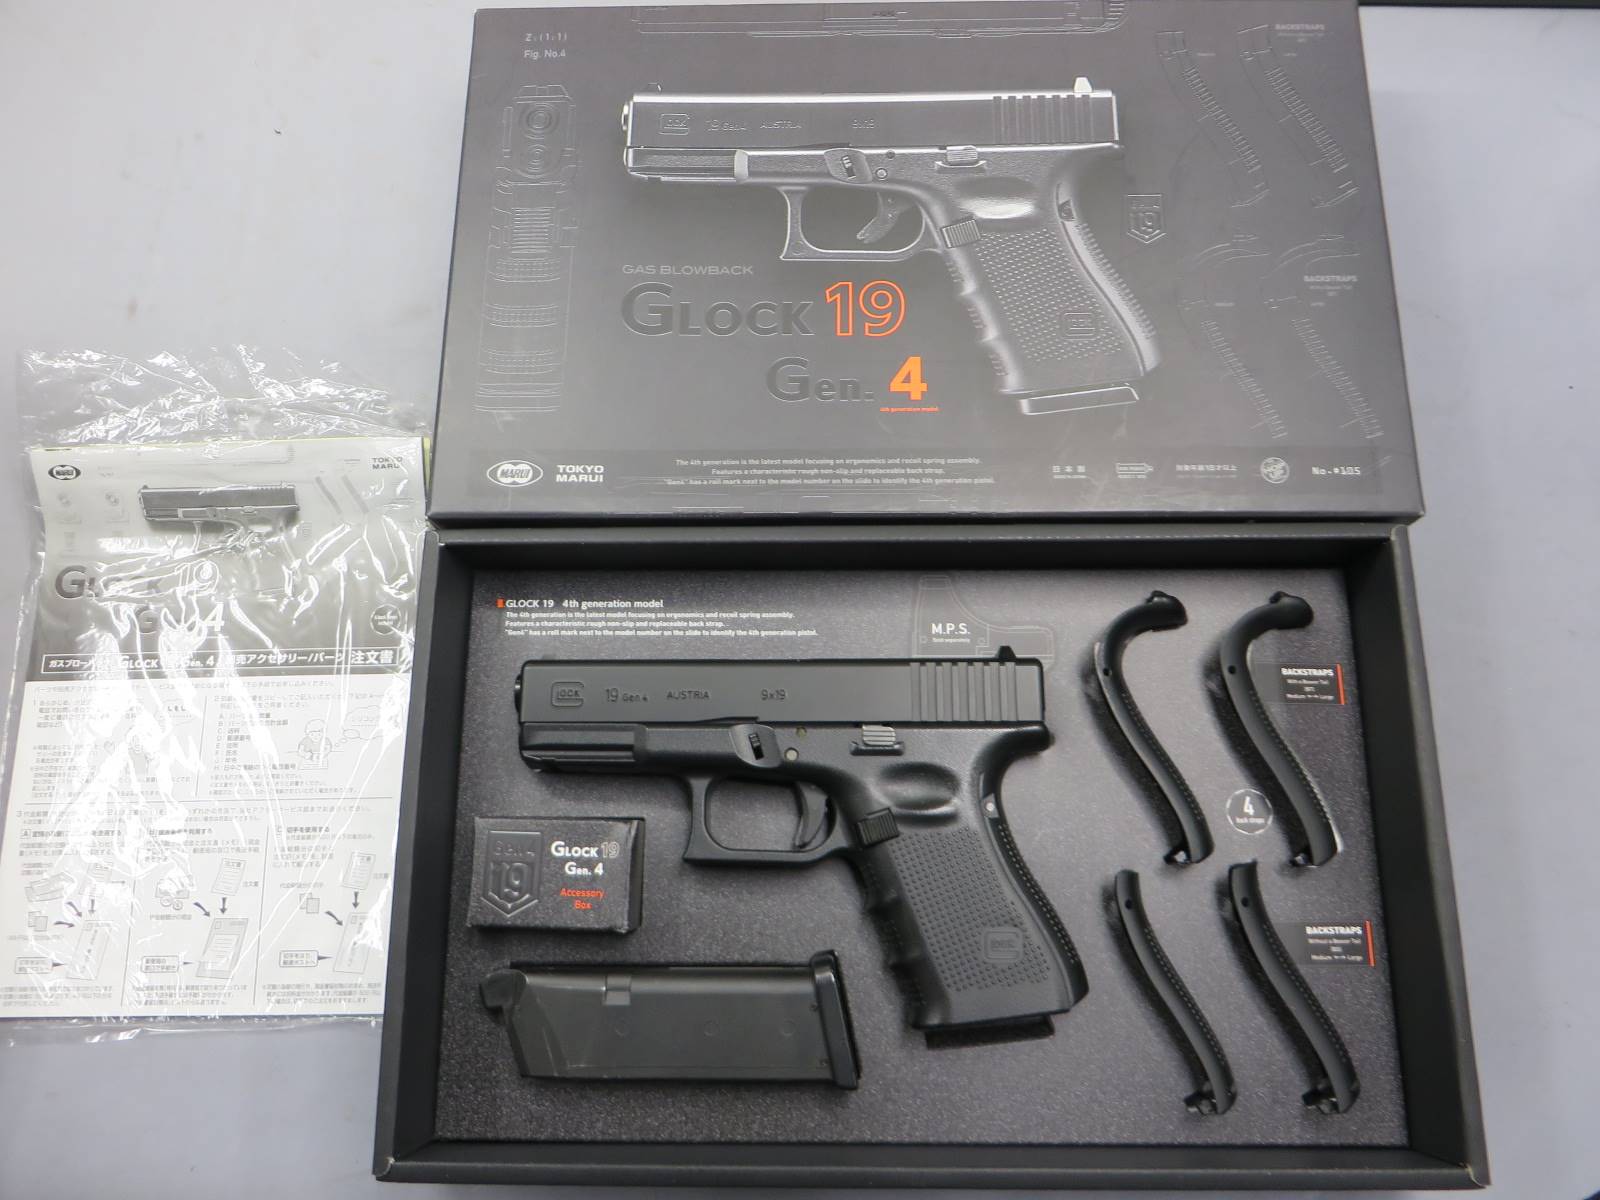 【東京マルイ】グロック19 Gen.4 デトネーター カスタムスライド ・G19 Glock19